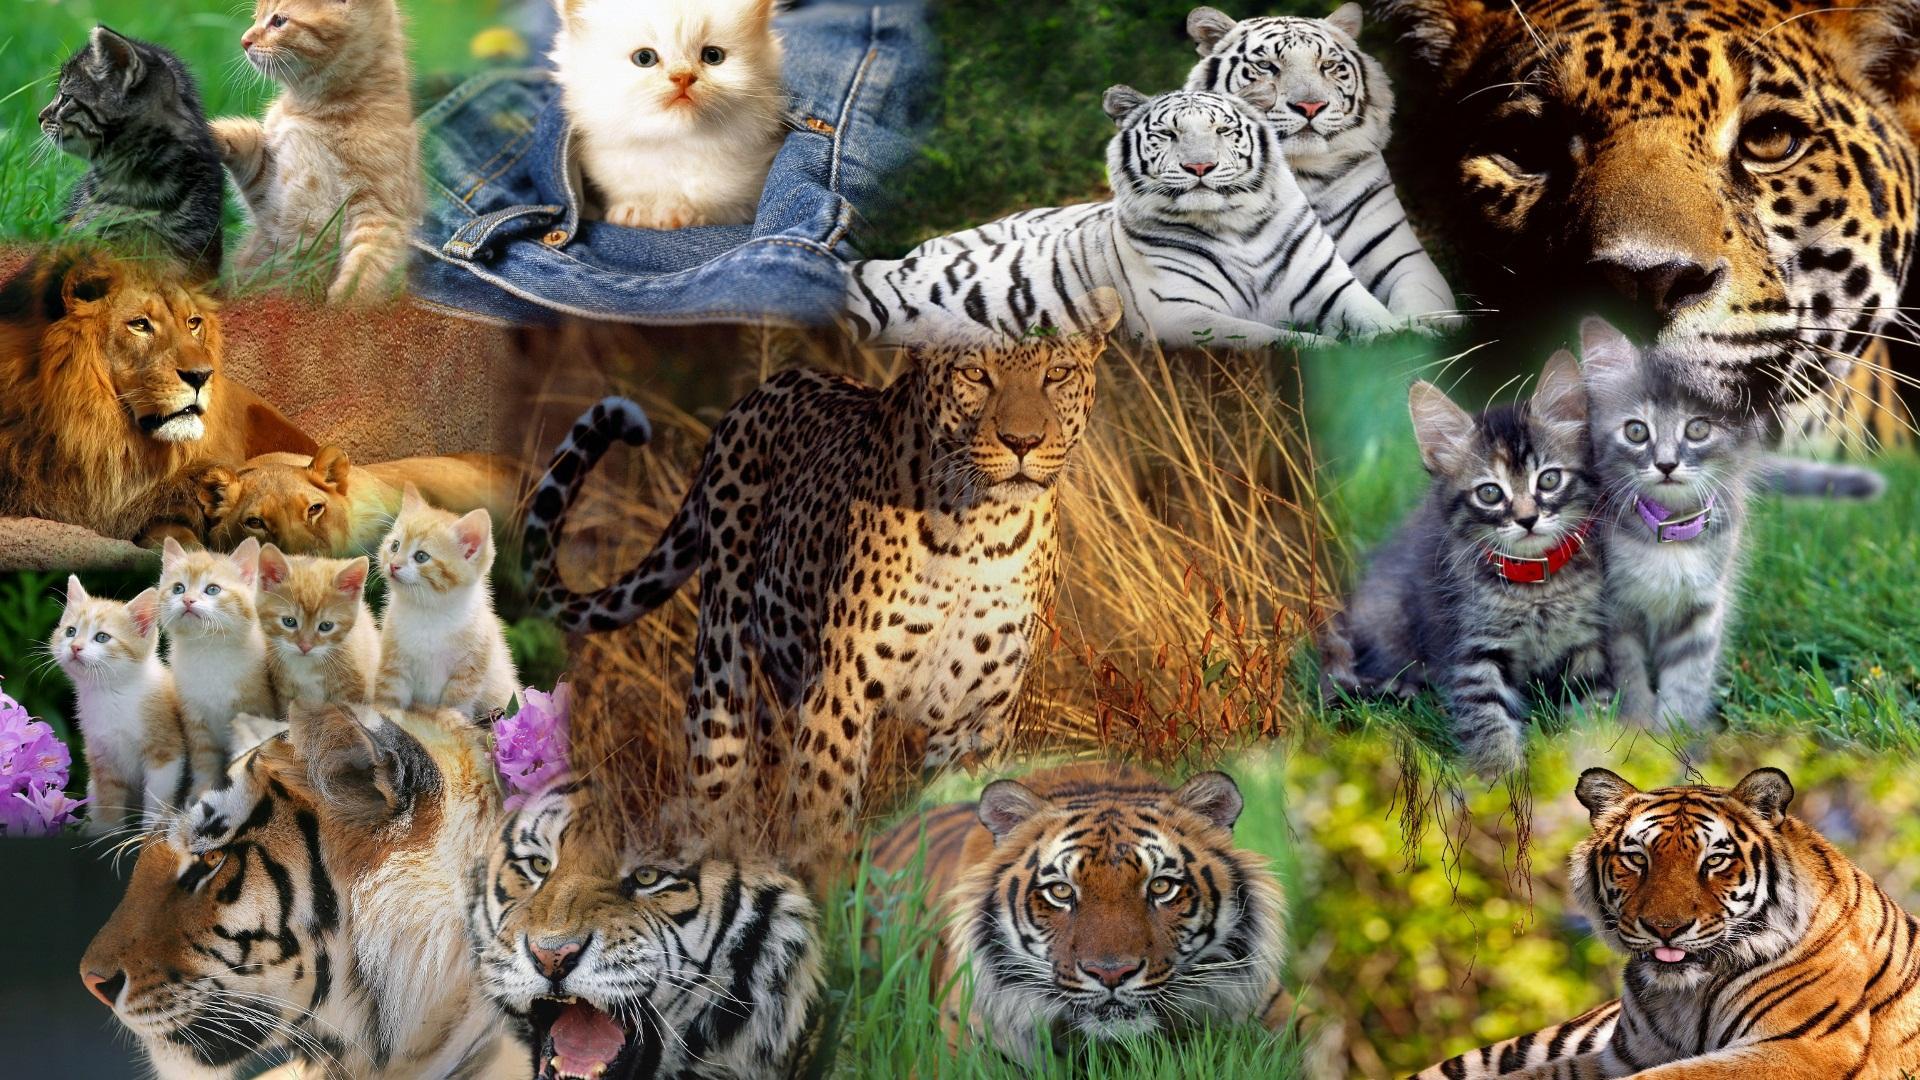 Cats Cats Cats HD desktop wallpaper, Widescreen, High Definition